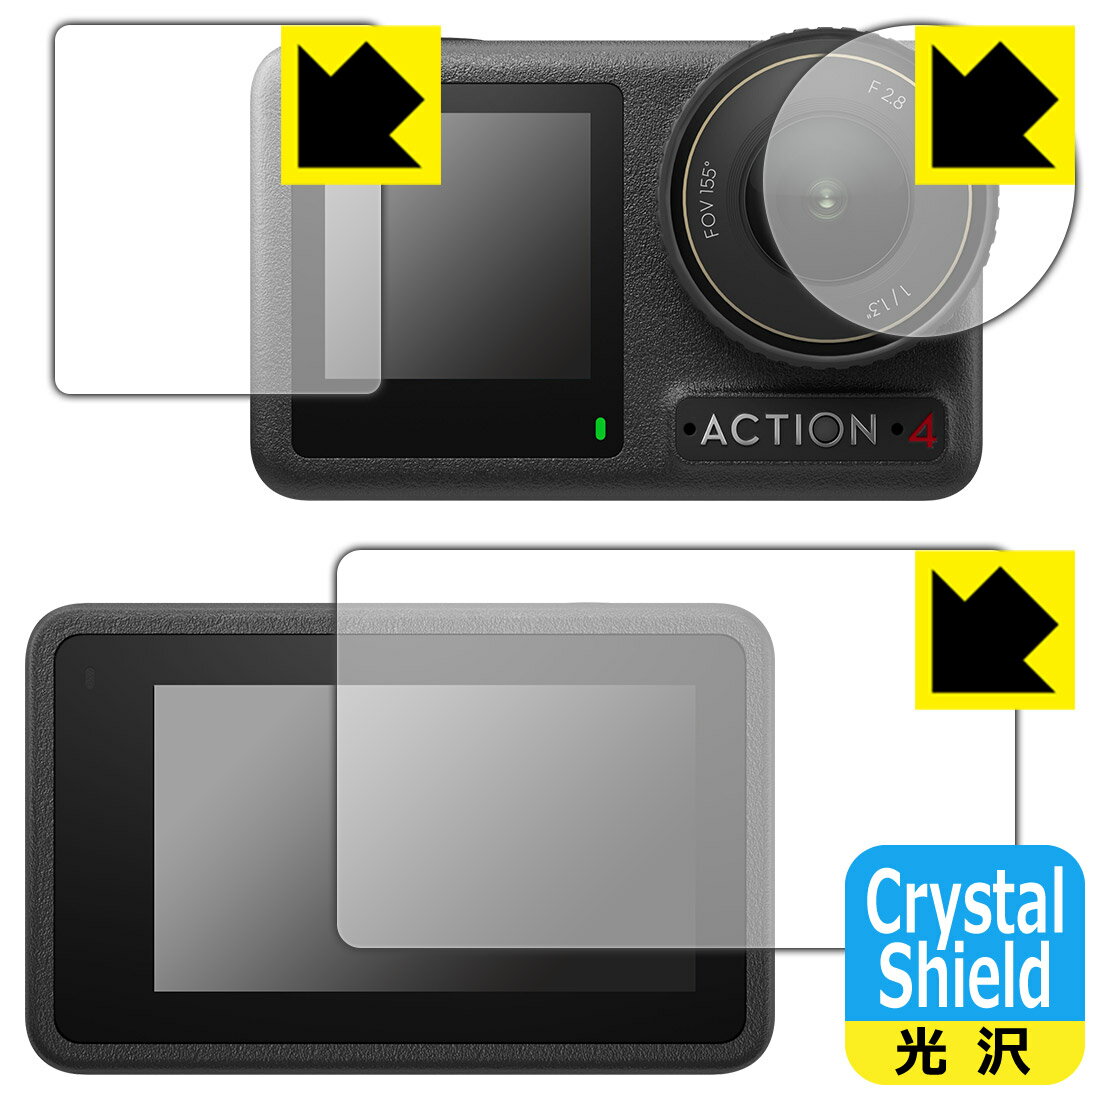 対応機種●対応機種 : DJI Osmo Action 4 メイン用/サブ用/レンズ部専用の商品です。　　※この商品は純正の保護フレームを装着しない方向けの商品です。保護フレームを装着される方は、「保護フレーム装着あり対応」商品を用意しておりますのでそちらをご購入ください。　　※レンズ前のガラス面に貼り付けるため、画像に影響が出る可能性がございます。●製品内容 : メイン用フィルム1枚・サブ用フィルム1枚・レンズ部用フィルム1枚・クリーニングワイプ1個●※この機器はレンズ部のコーティングが良いため、フィルムに力を加えると貼り付けた位置から動く場合がございます。簡単に戻せますので、戻してお使いください。●「Crystal Shield」は高い透明度と光沢感で、保護フィルムを貼っていないかのようなクリア感のある『光沢タイプの保護フィルム』●安心の国産素材を使用。日本国内の自社工場で製造し出荷しています。 ★貼り付け失敗交換サービス対象商品★ 国内自社工場製造・発送だからできる 安心の製品保証とサポート ■製品保証 お届けした製品が誤っていたり、不具合があった場合などには、お届けから1ヶ月以内にメールにてお問い合わせください。交換等対応させていただきます。[キャンセル・返品（返金・交換）について] ■■貼り付け失敗時の交換サービス■■貼り付けに失敗しても1回だけ無償交換ができます。(失敗したフィルムをお送りいただき、新品に無償交換します。往復の送料のみお客様にご負担をお願いいたします。詳しくは製品に同封の紙をご確認ください) ■■保護フィルム貼り付け代行サービス■■保護フィルムの貼り付け作業に自信がない方には、PDA工房で貼り付け作業を代行いたします。(PDA工房の保護フィルムのみが対象です。詳しくは製品に同封の紙をご確認ください) Crystal Shield【光沢】保護フィルム 素材説明 ■高級感あふれる光沢と画質を損なわない透明度！貼っていることを意識させないほどの高い透明度に、高級感あふれる光沢・クリアな仕上げとなります。動画視聴や画像編集など、機器本来の発色を重視したい方におすすめです。■ハードコートでスリキズを防ぎ、フッ素加工で汚れもつきにくい！ハードコート加工がされており、キズや擦れに強くなっています。簡単にキズがつかず長くご利用いただけます。表面はフッ素コーティングがされており、皮脂や汚れがつきにくく、また、落ちやすくなっています。指滑りもなめらかで、快適な使用感です。■気泡の入りにくい特殊な自己吸着タイプ接着面は気泡の入りにくい特殊な自己吸着タイプです。素材に柔軟性があり、貼り付け作業も簡単にできます。また、はがすときにガラス製フィルムのように割れてしまうことはありません。貼り直しが何度でもできるので、正しい位置へ貼り付けられるまでやり直すことができます。■抗菌加工で清潔抗菌加工によりフィルム表面の菌の繁殖を抑えることができます。清潔な画面を保ちたい方におすすめです。※抗菌率99.9％ / JIS Z2801 抗菌性試験方法による評価■安心の日本製最高級グレードの国産素材を日本国内の弊社工場で加工している完全な Made in Japan です。安心の品質をお届けします。 【ポスト投函送料無料】商品は【ポスト投函発送 (追跡可能メール便)】で発送します。お急ぎ、配達日時を指定されたい方は以下のクーポンを同時購入ください。【お急ぎ便クーポン】　プラス110円(税込)で速達扱いでの発送。お届けはポストへの投函となります。【配達日時指定クーポン】　プラス550円(税込)で配達日時を指定し、宅配便で発送させていただきます。【お急ぎ便クーポン】はこちらをクリック【配達日時指定クーポン】はこちらをクリック